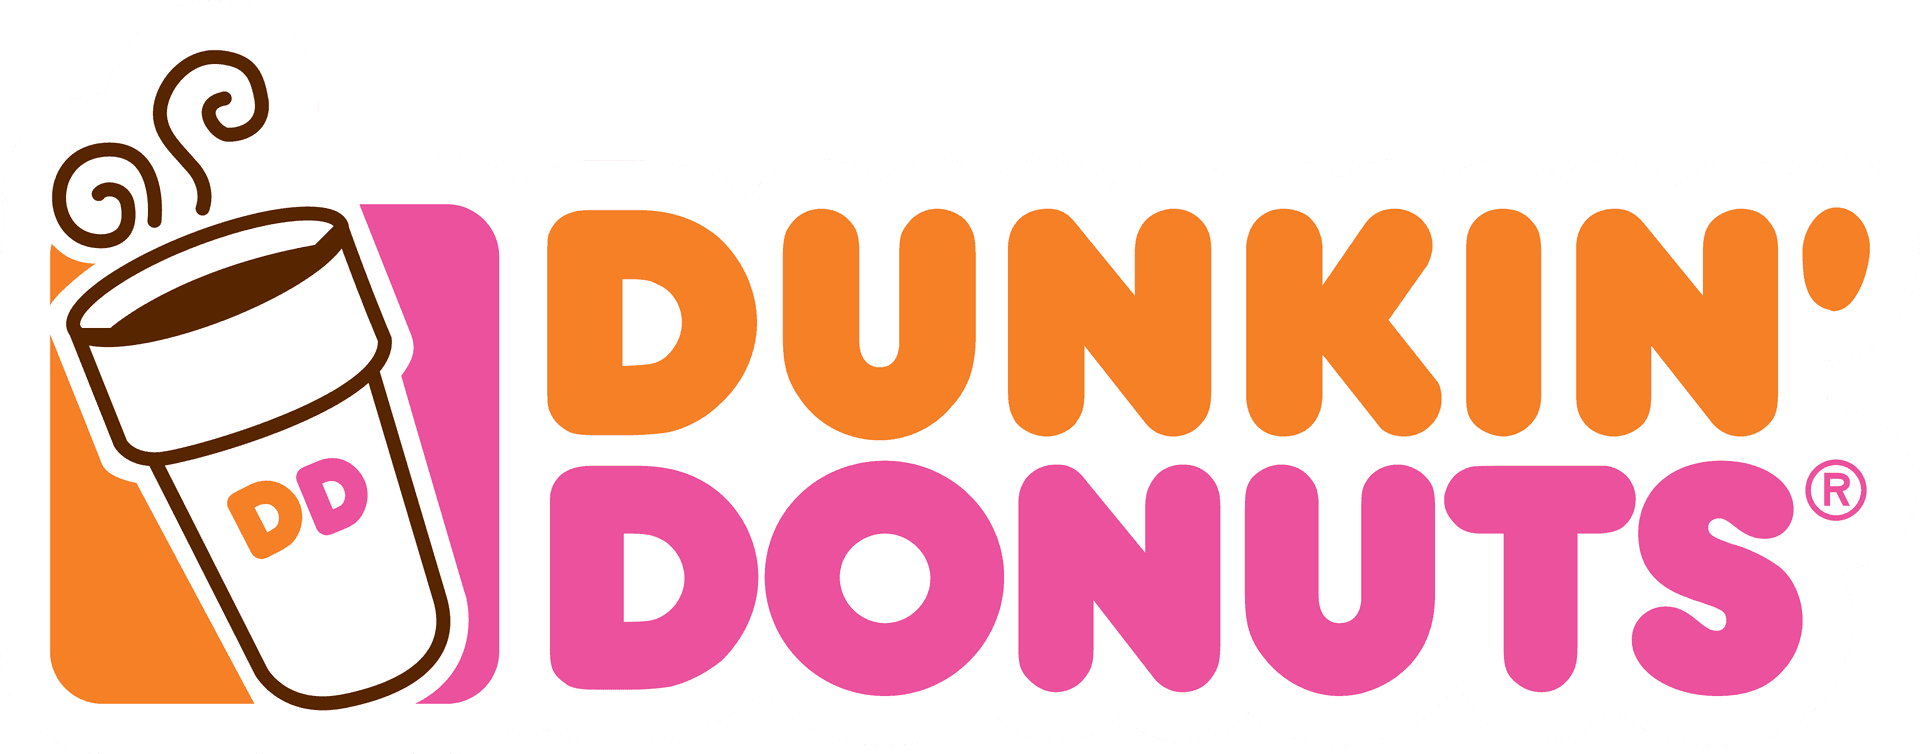 Lækreog Dejlige Dunkin' Donuts!